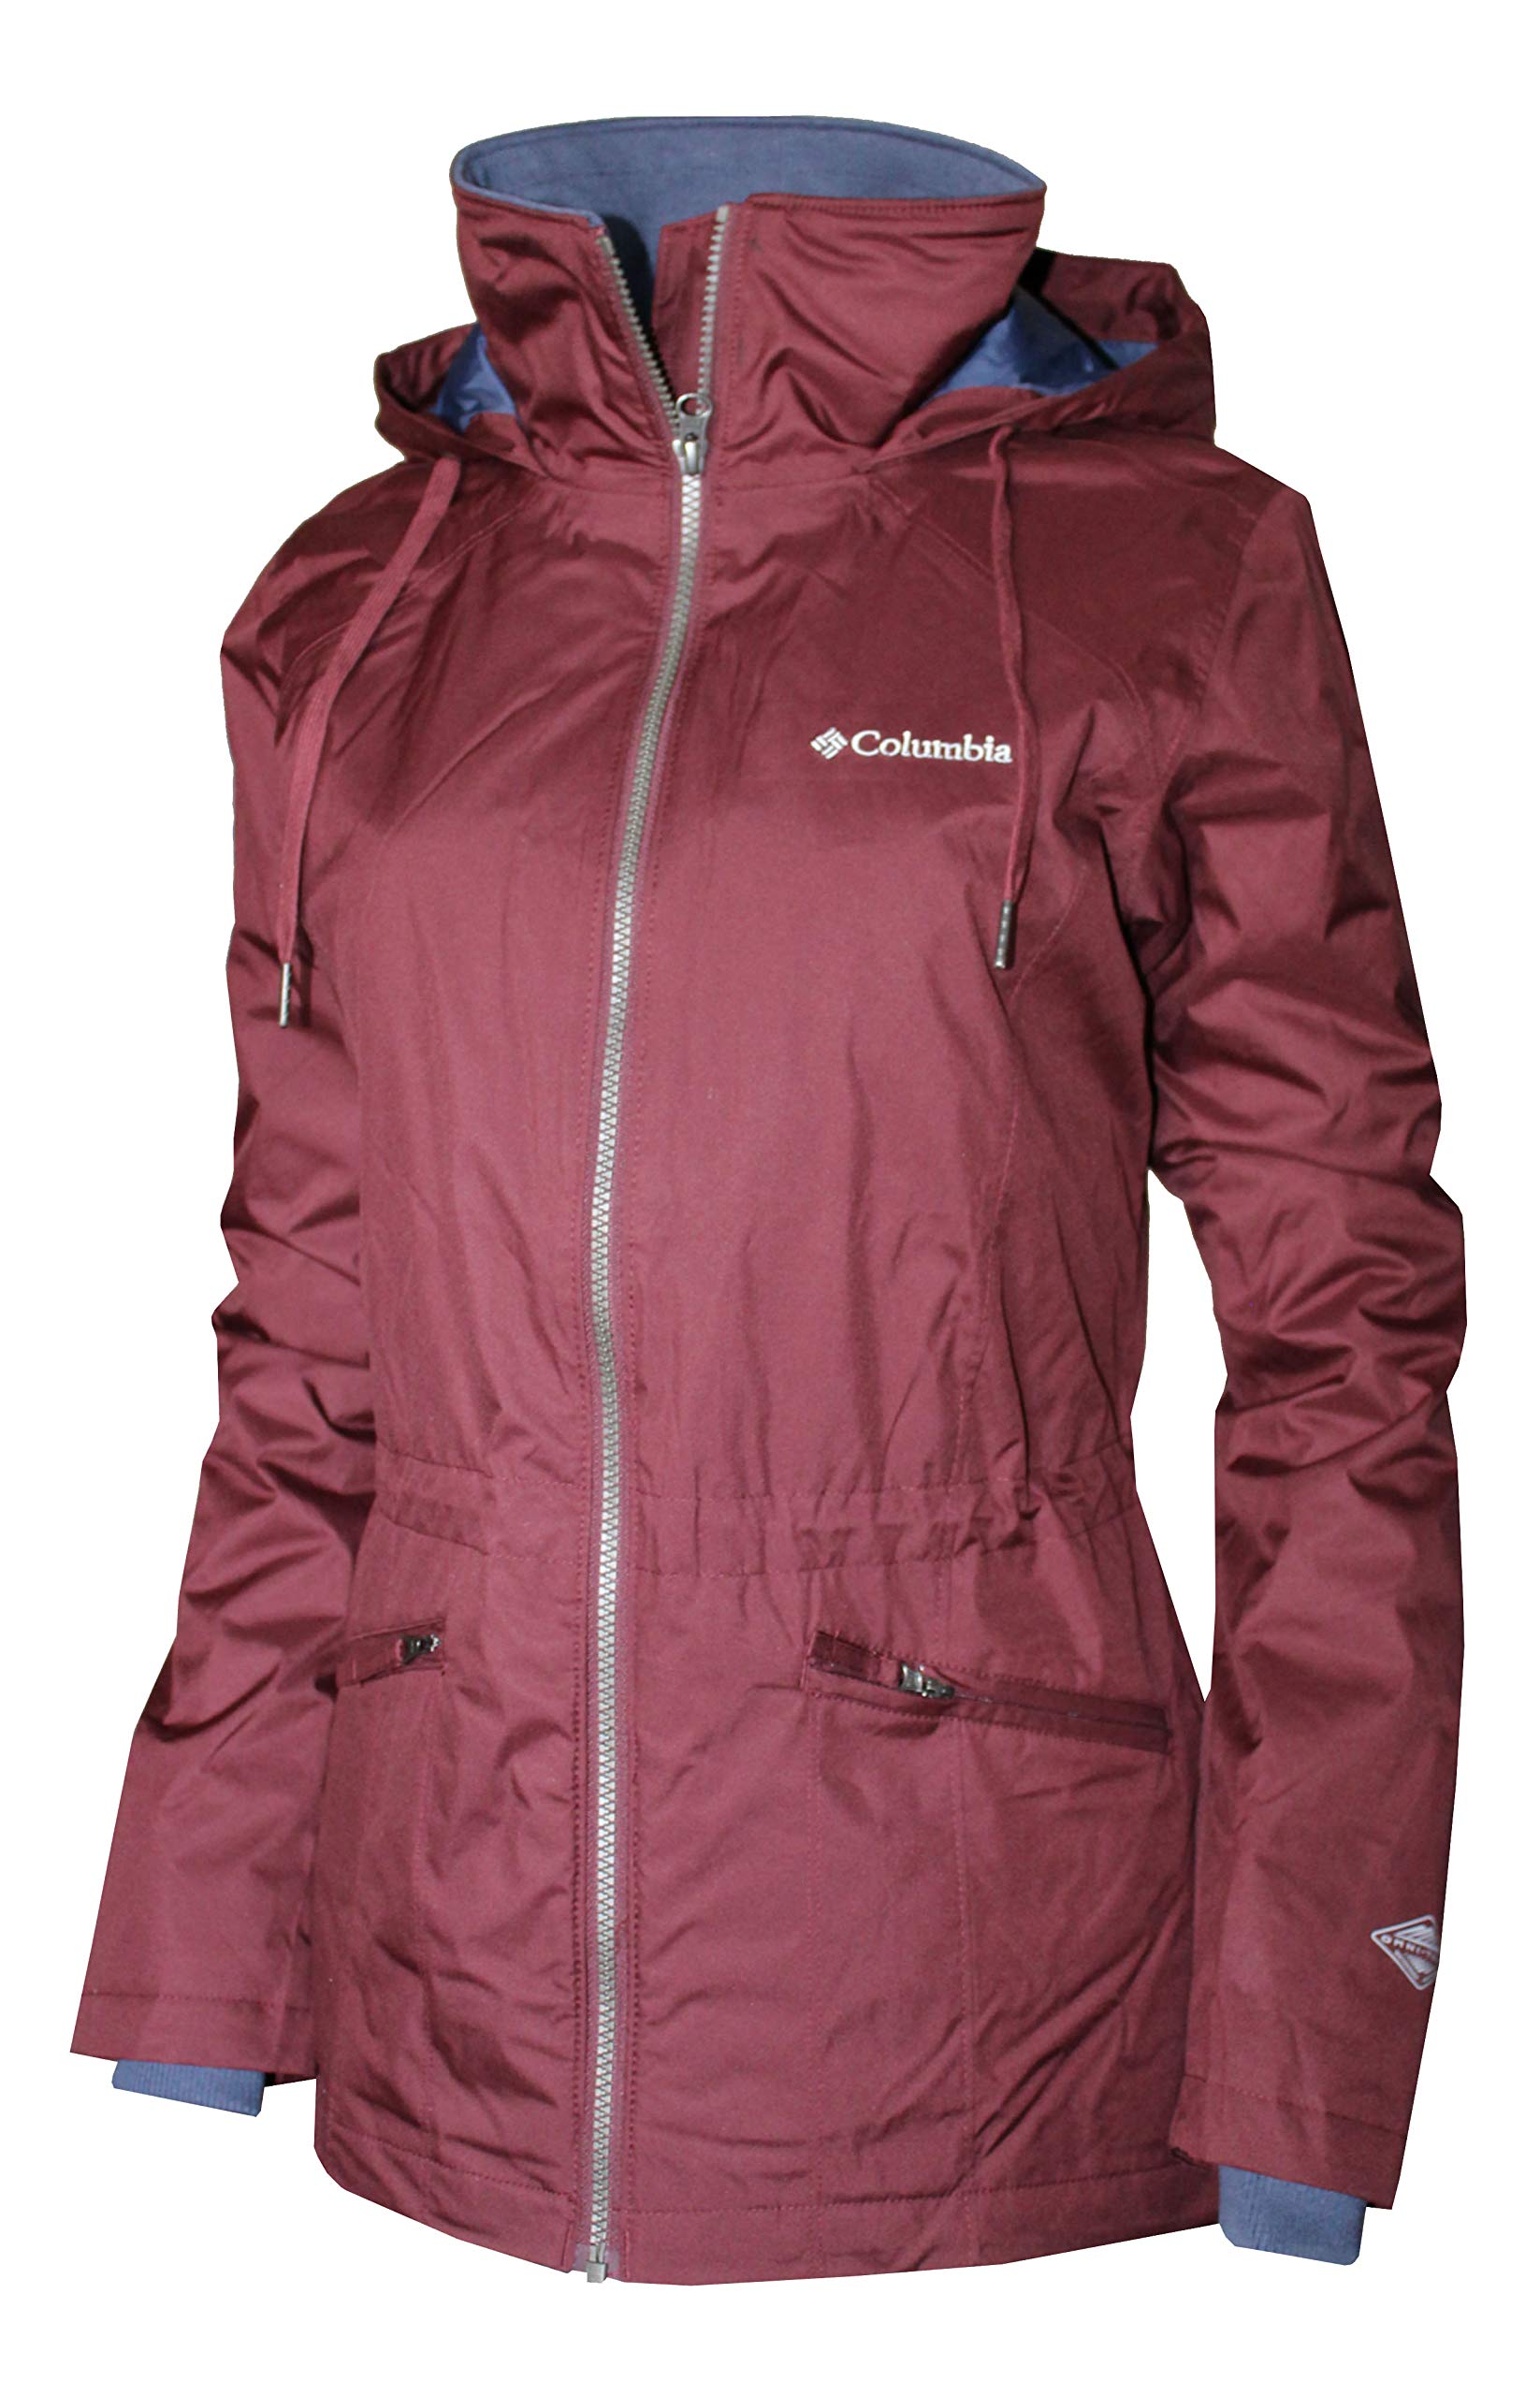 Columbia Women's Meadow Falls II Waterproof Hooded Jacket (Bloodstone, S)